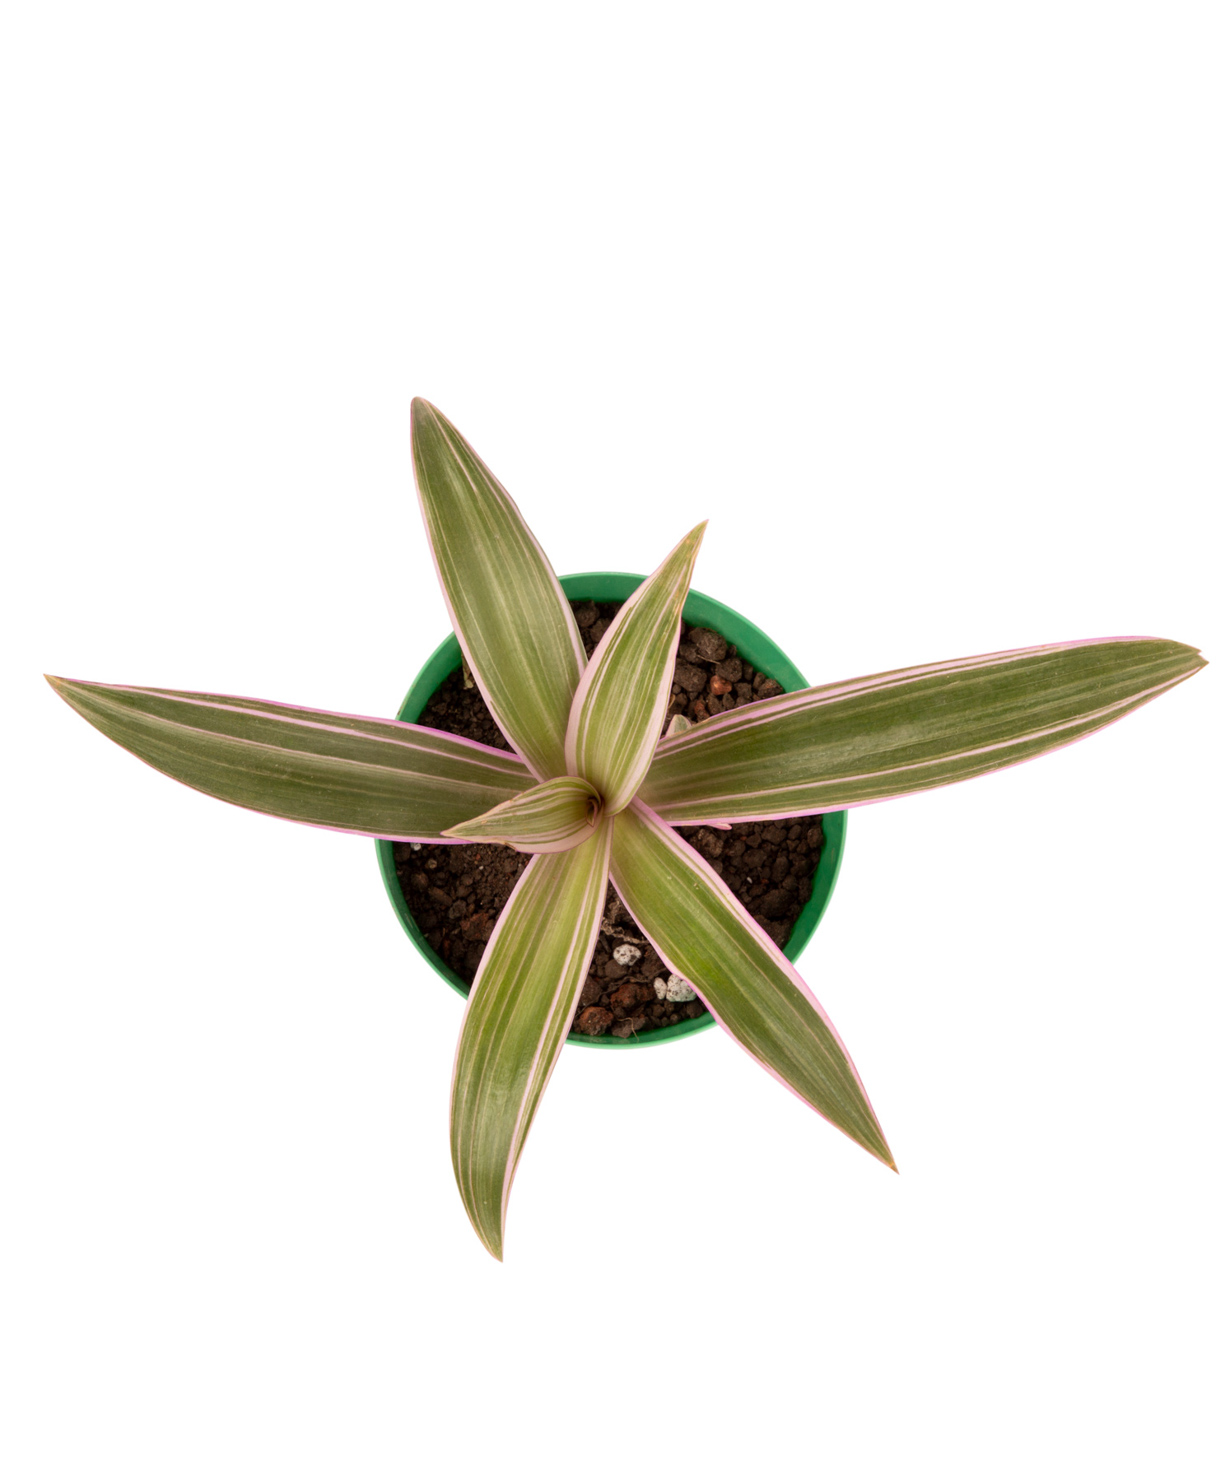 Plant `Eco Garden` Succulent №9